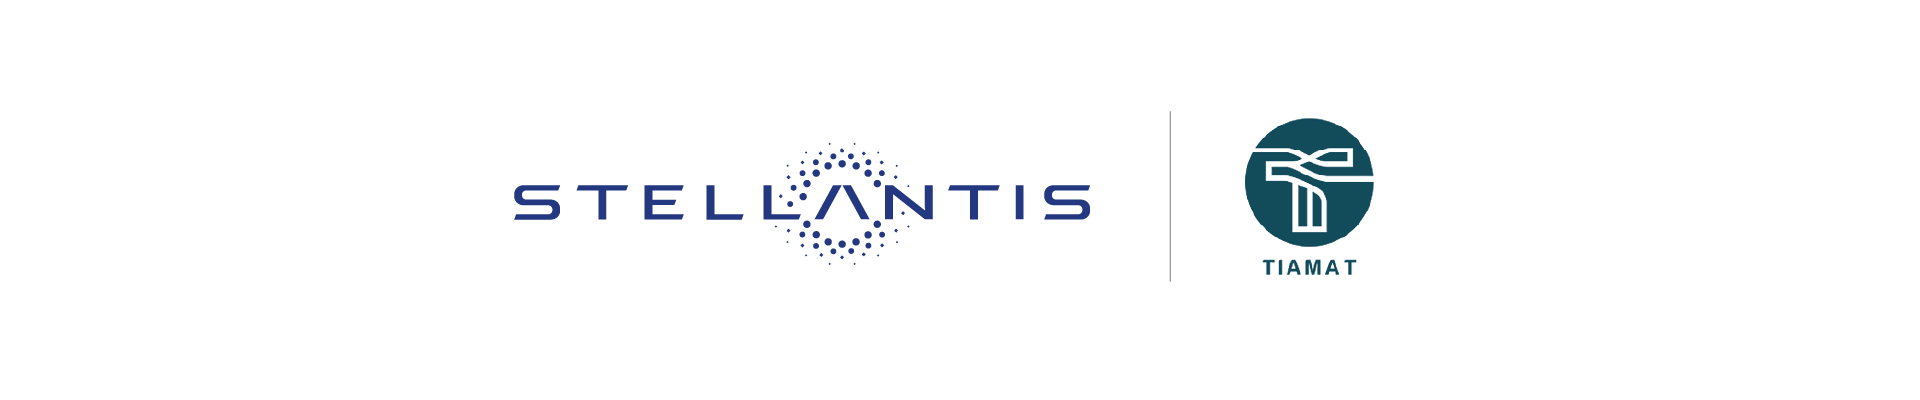 Image Logo of Stellantis-Tiamat